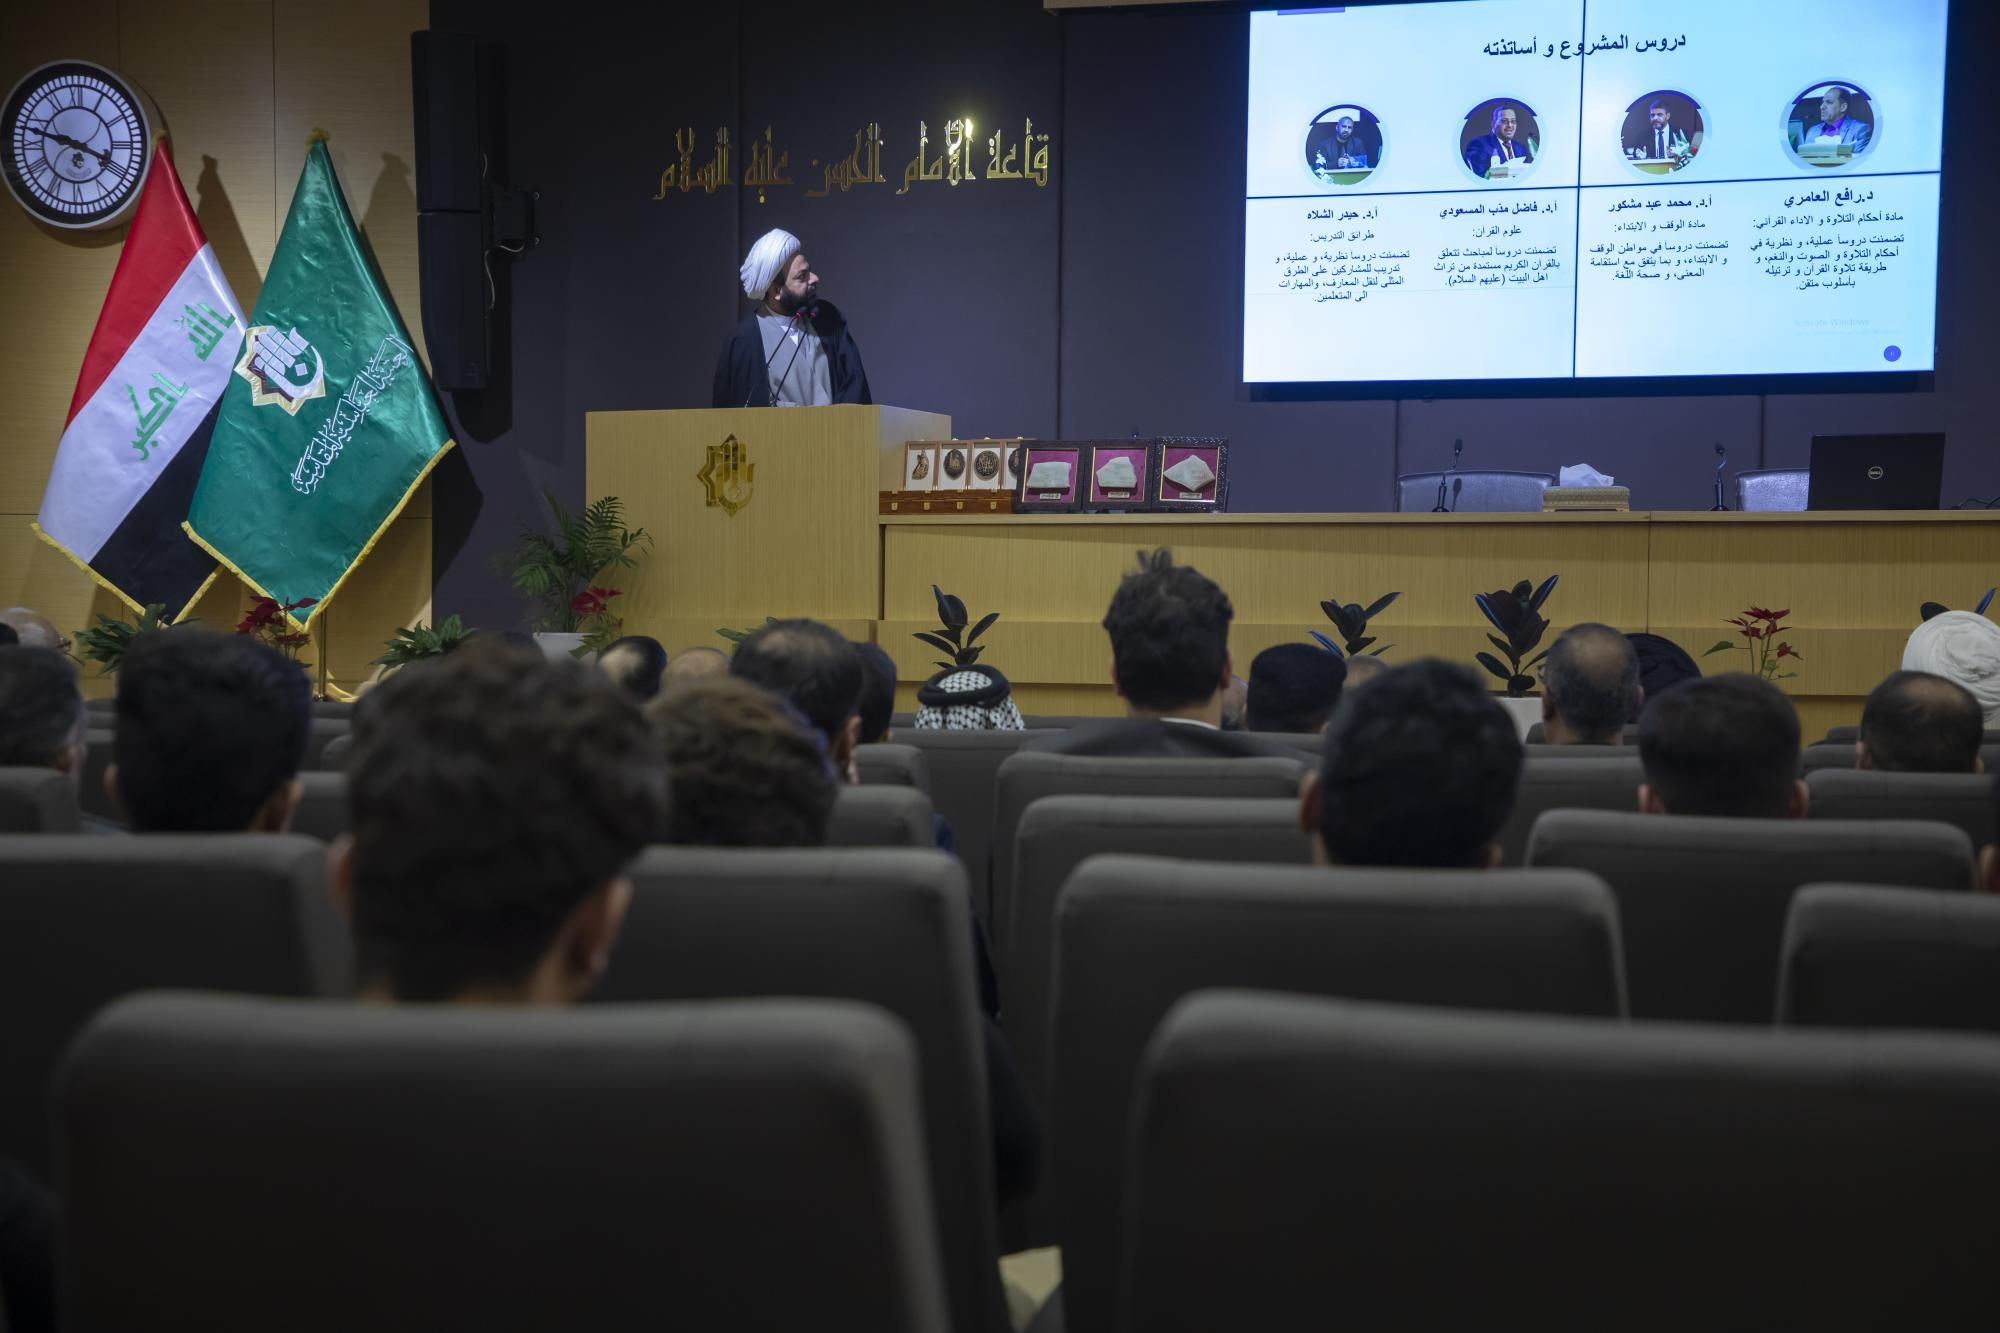 المجمع العلمي يطلق فعّاليات الحفل المركزي لمشروع الكفيل القرآني الرابع